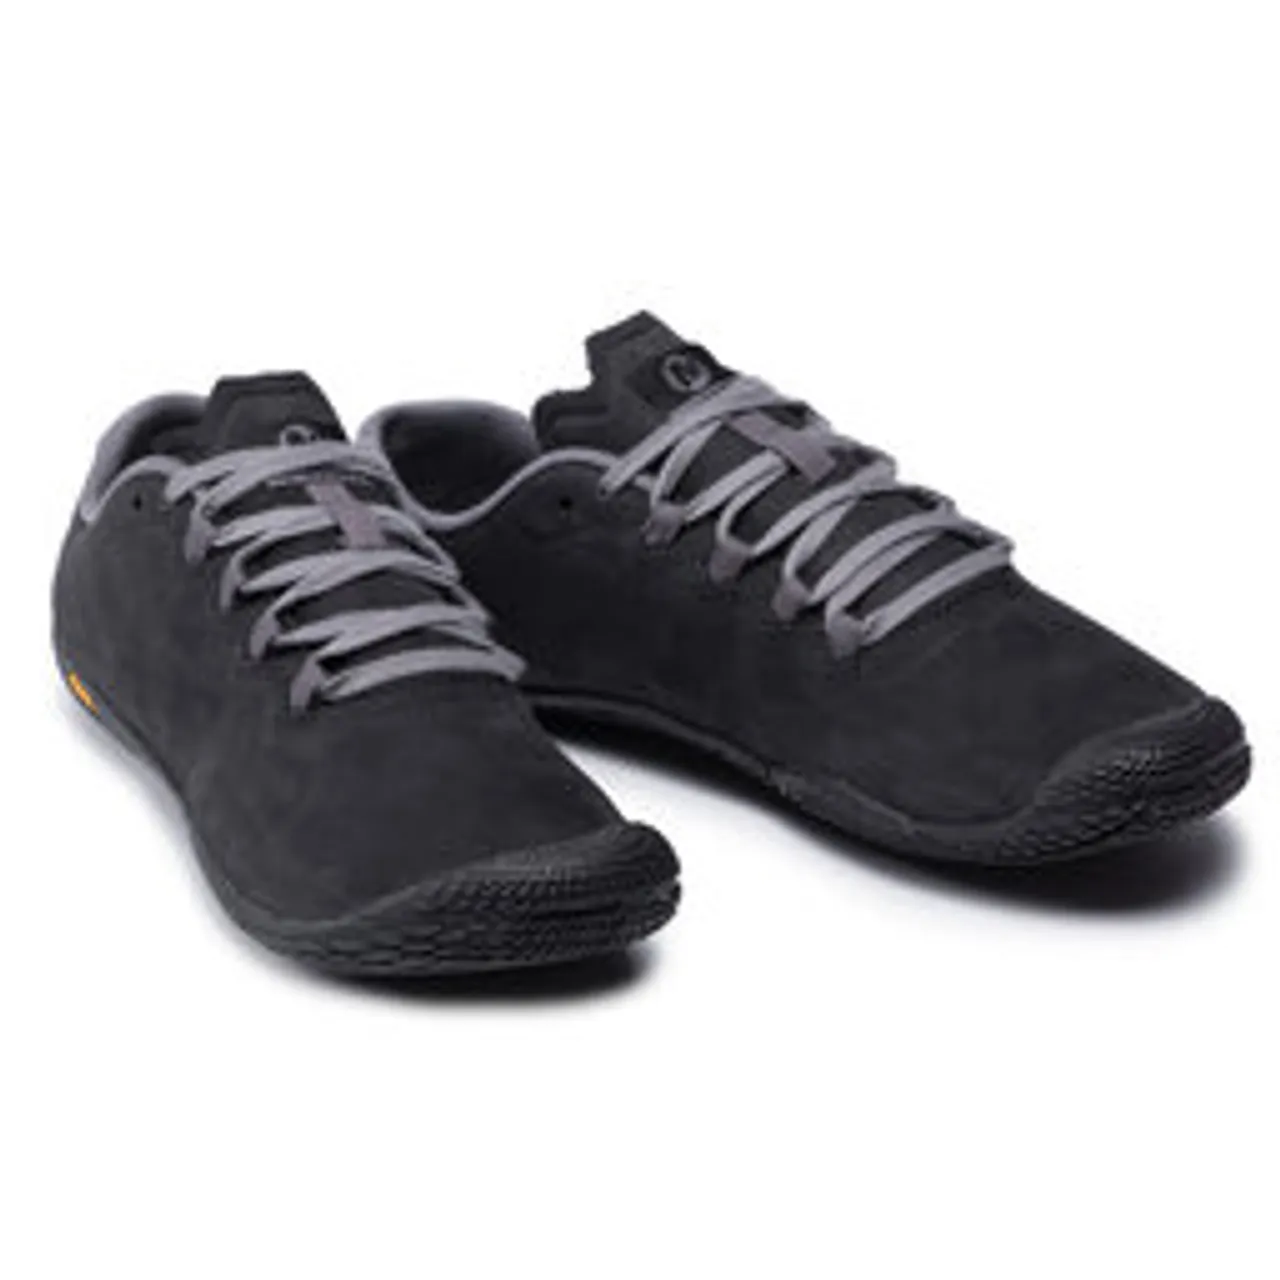 Schuhe Merrell Vapor Glove 3 Luna Ltr J003422 Black/Charcoal